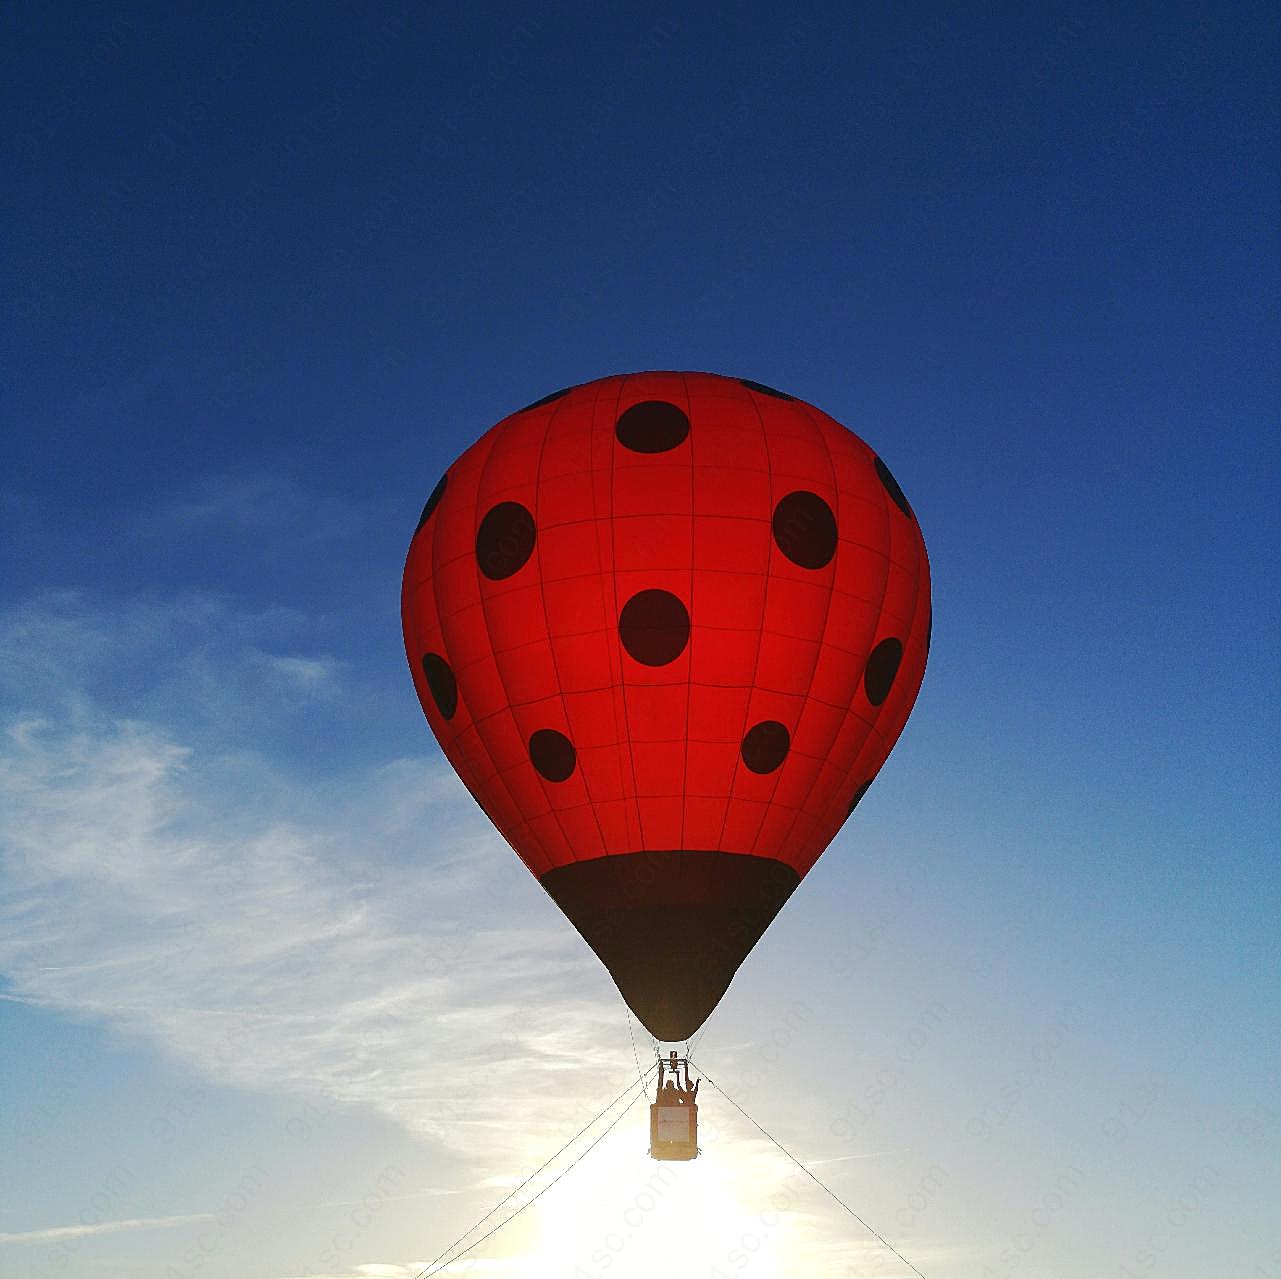 热气球飞升图片高清摄影